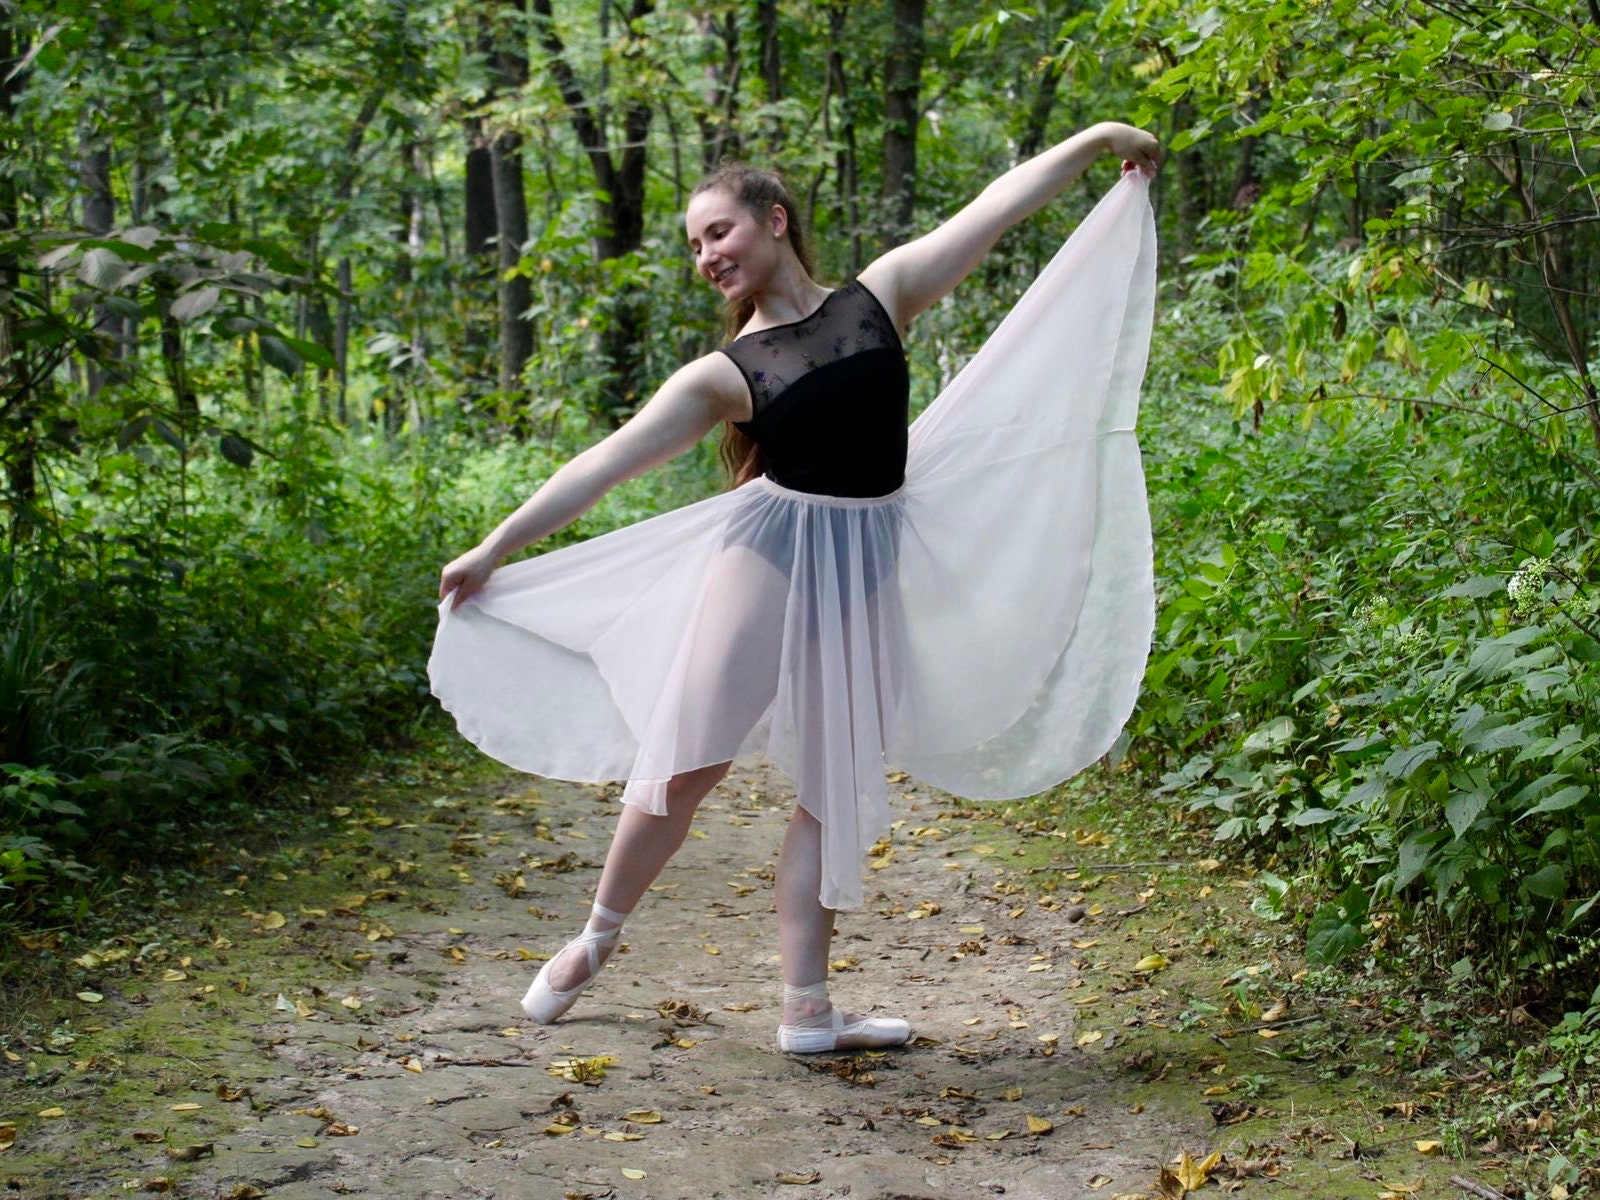 Cuulrite Ballet Skirt Women/Adult Chiffon Dance Wrap Short Skirt 